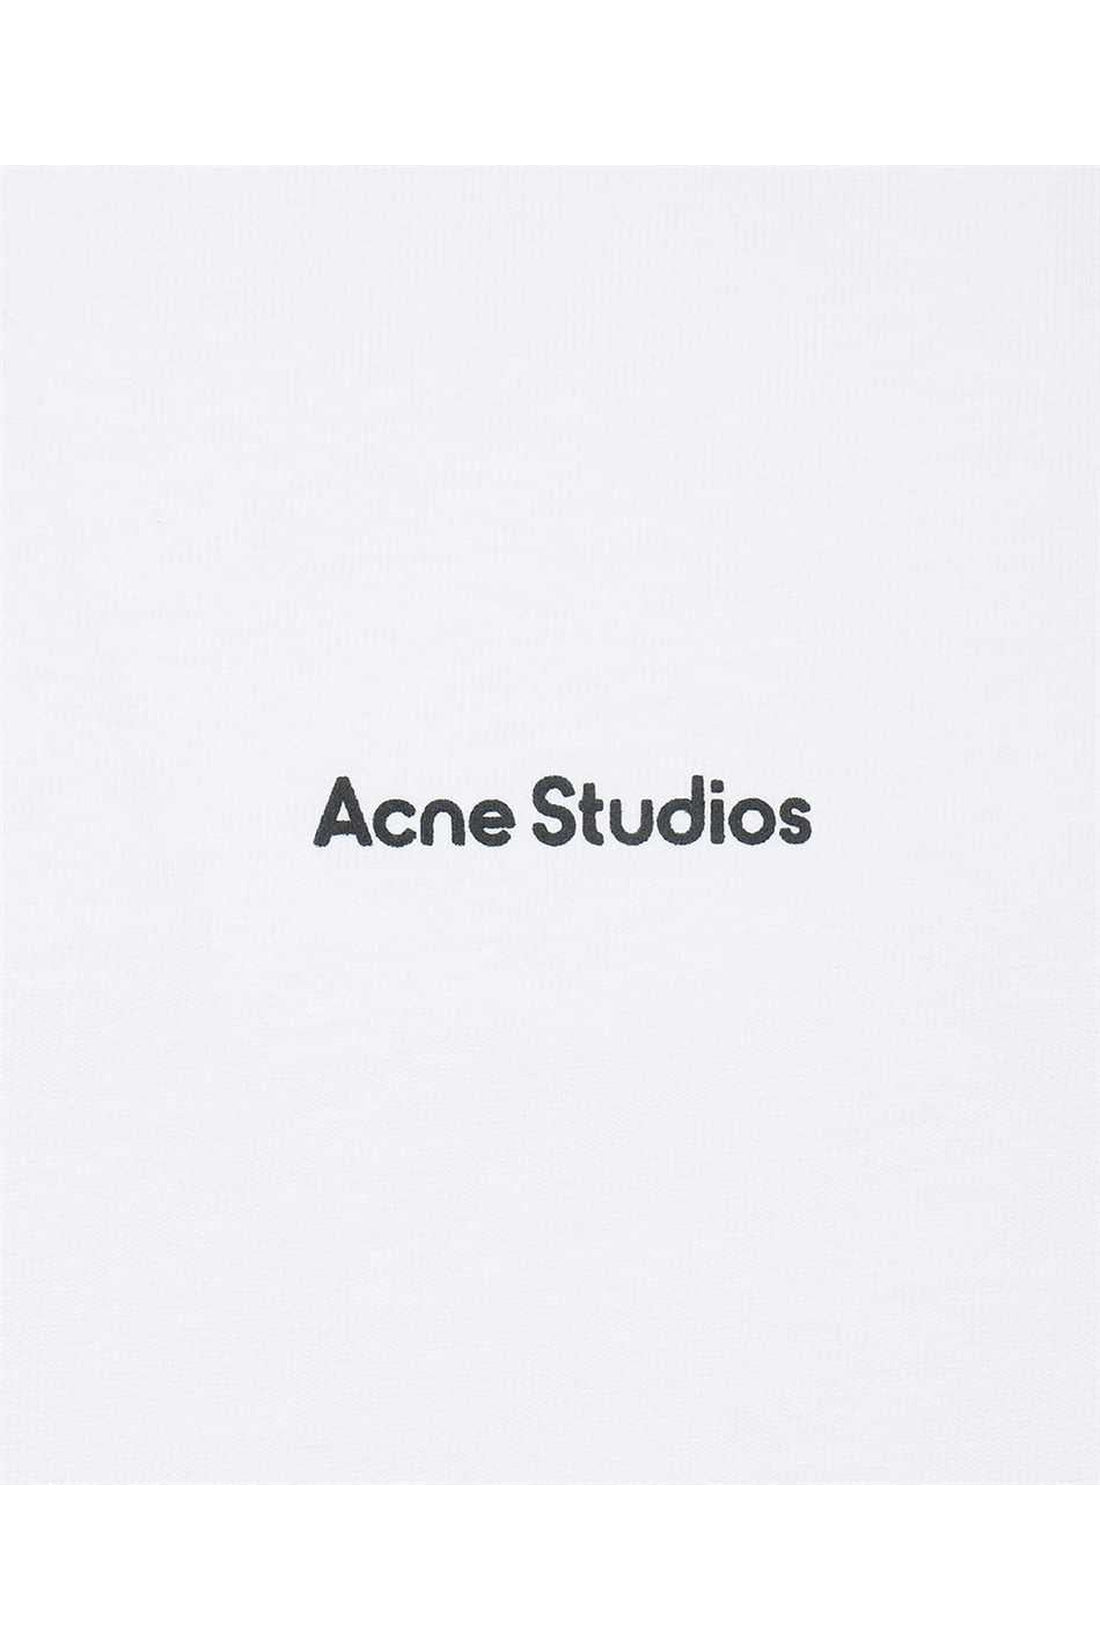 Acne Studios-OUTLET-SALE-Cotton crew-neck T-shirt-ARCHIVIST